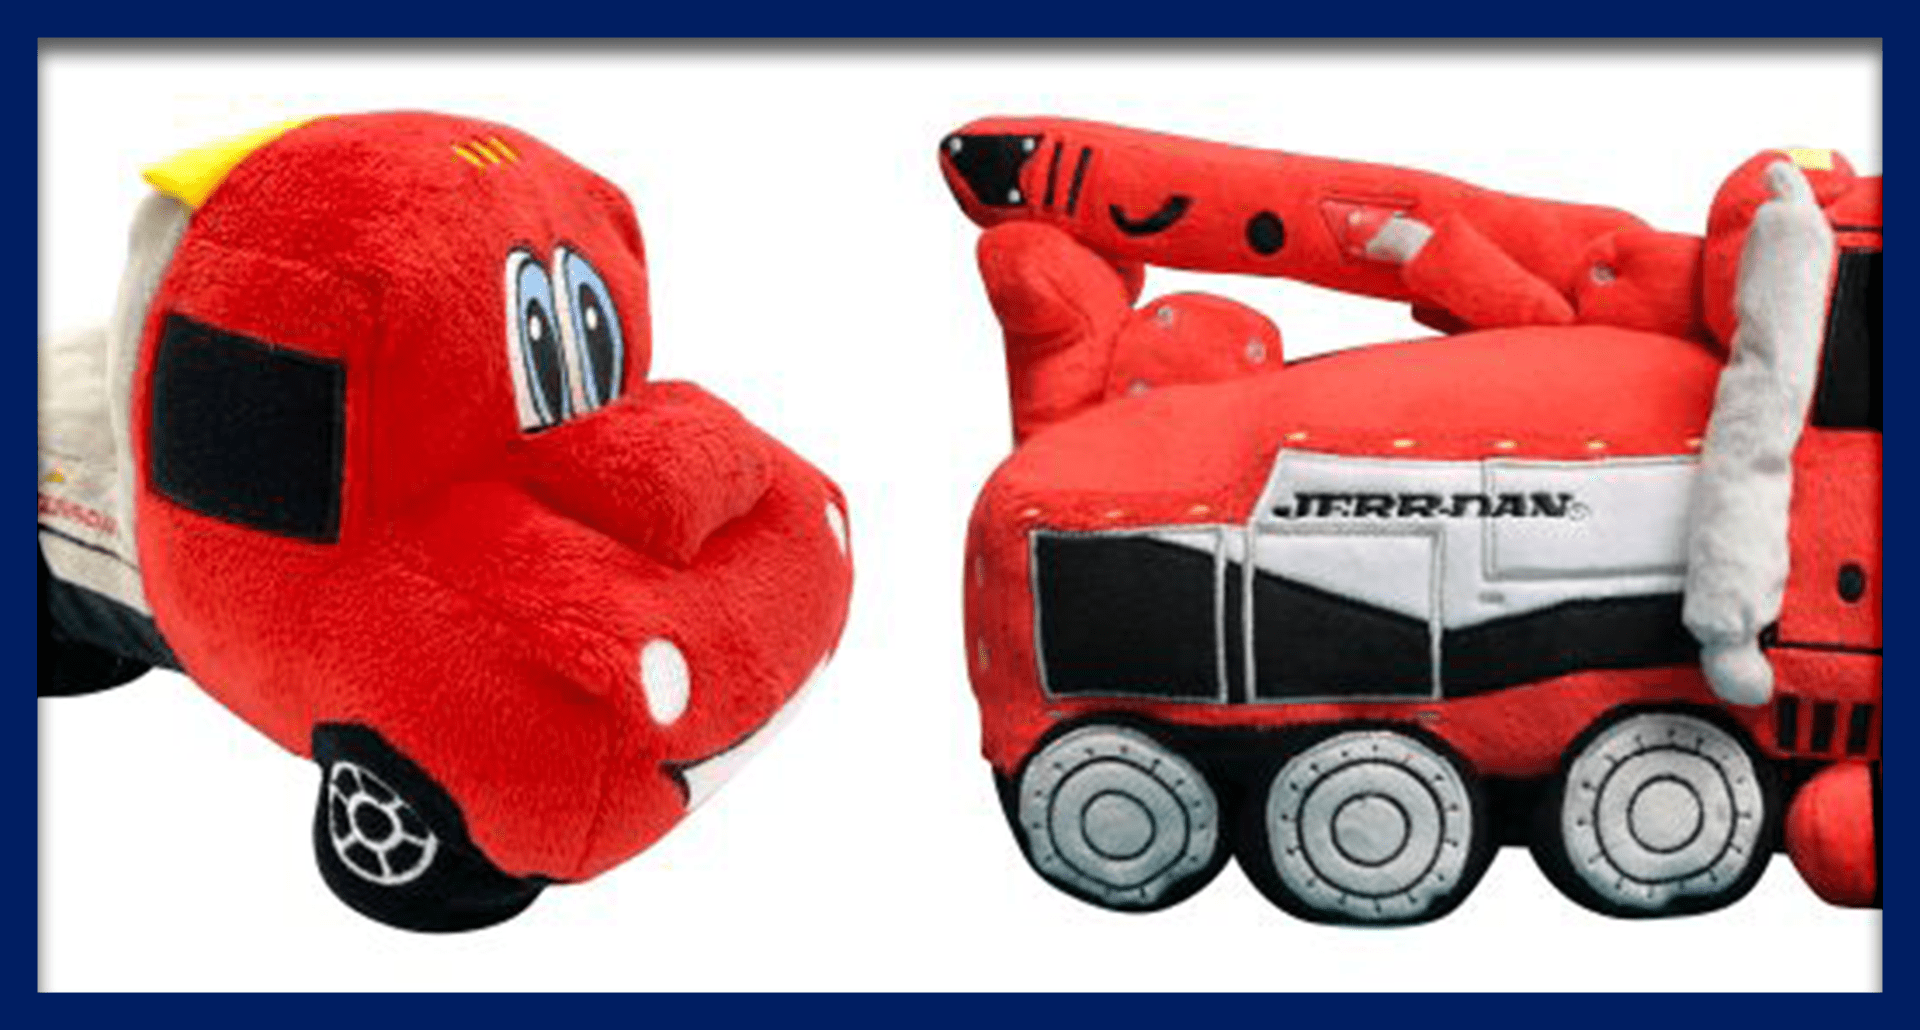 Case Study: Jerr-dan's Plush Toys